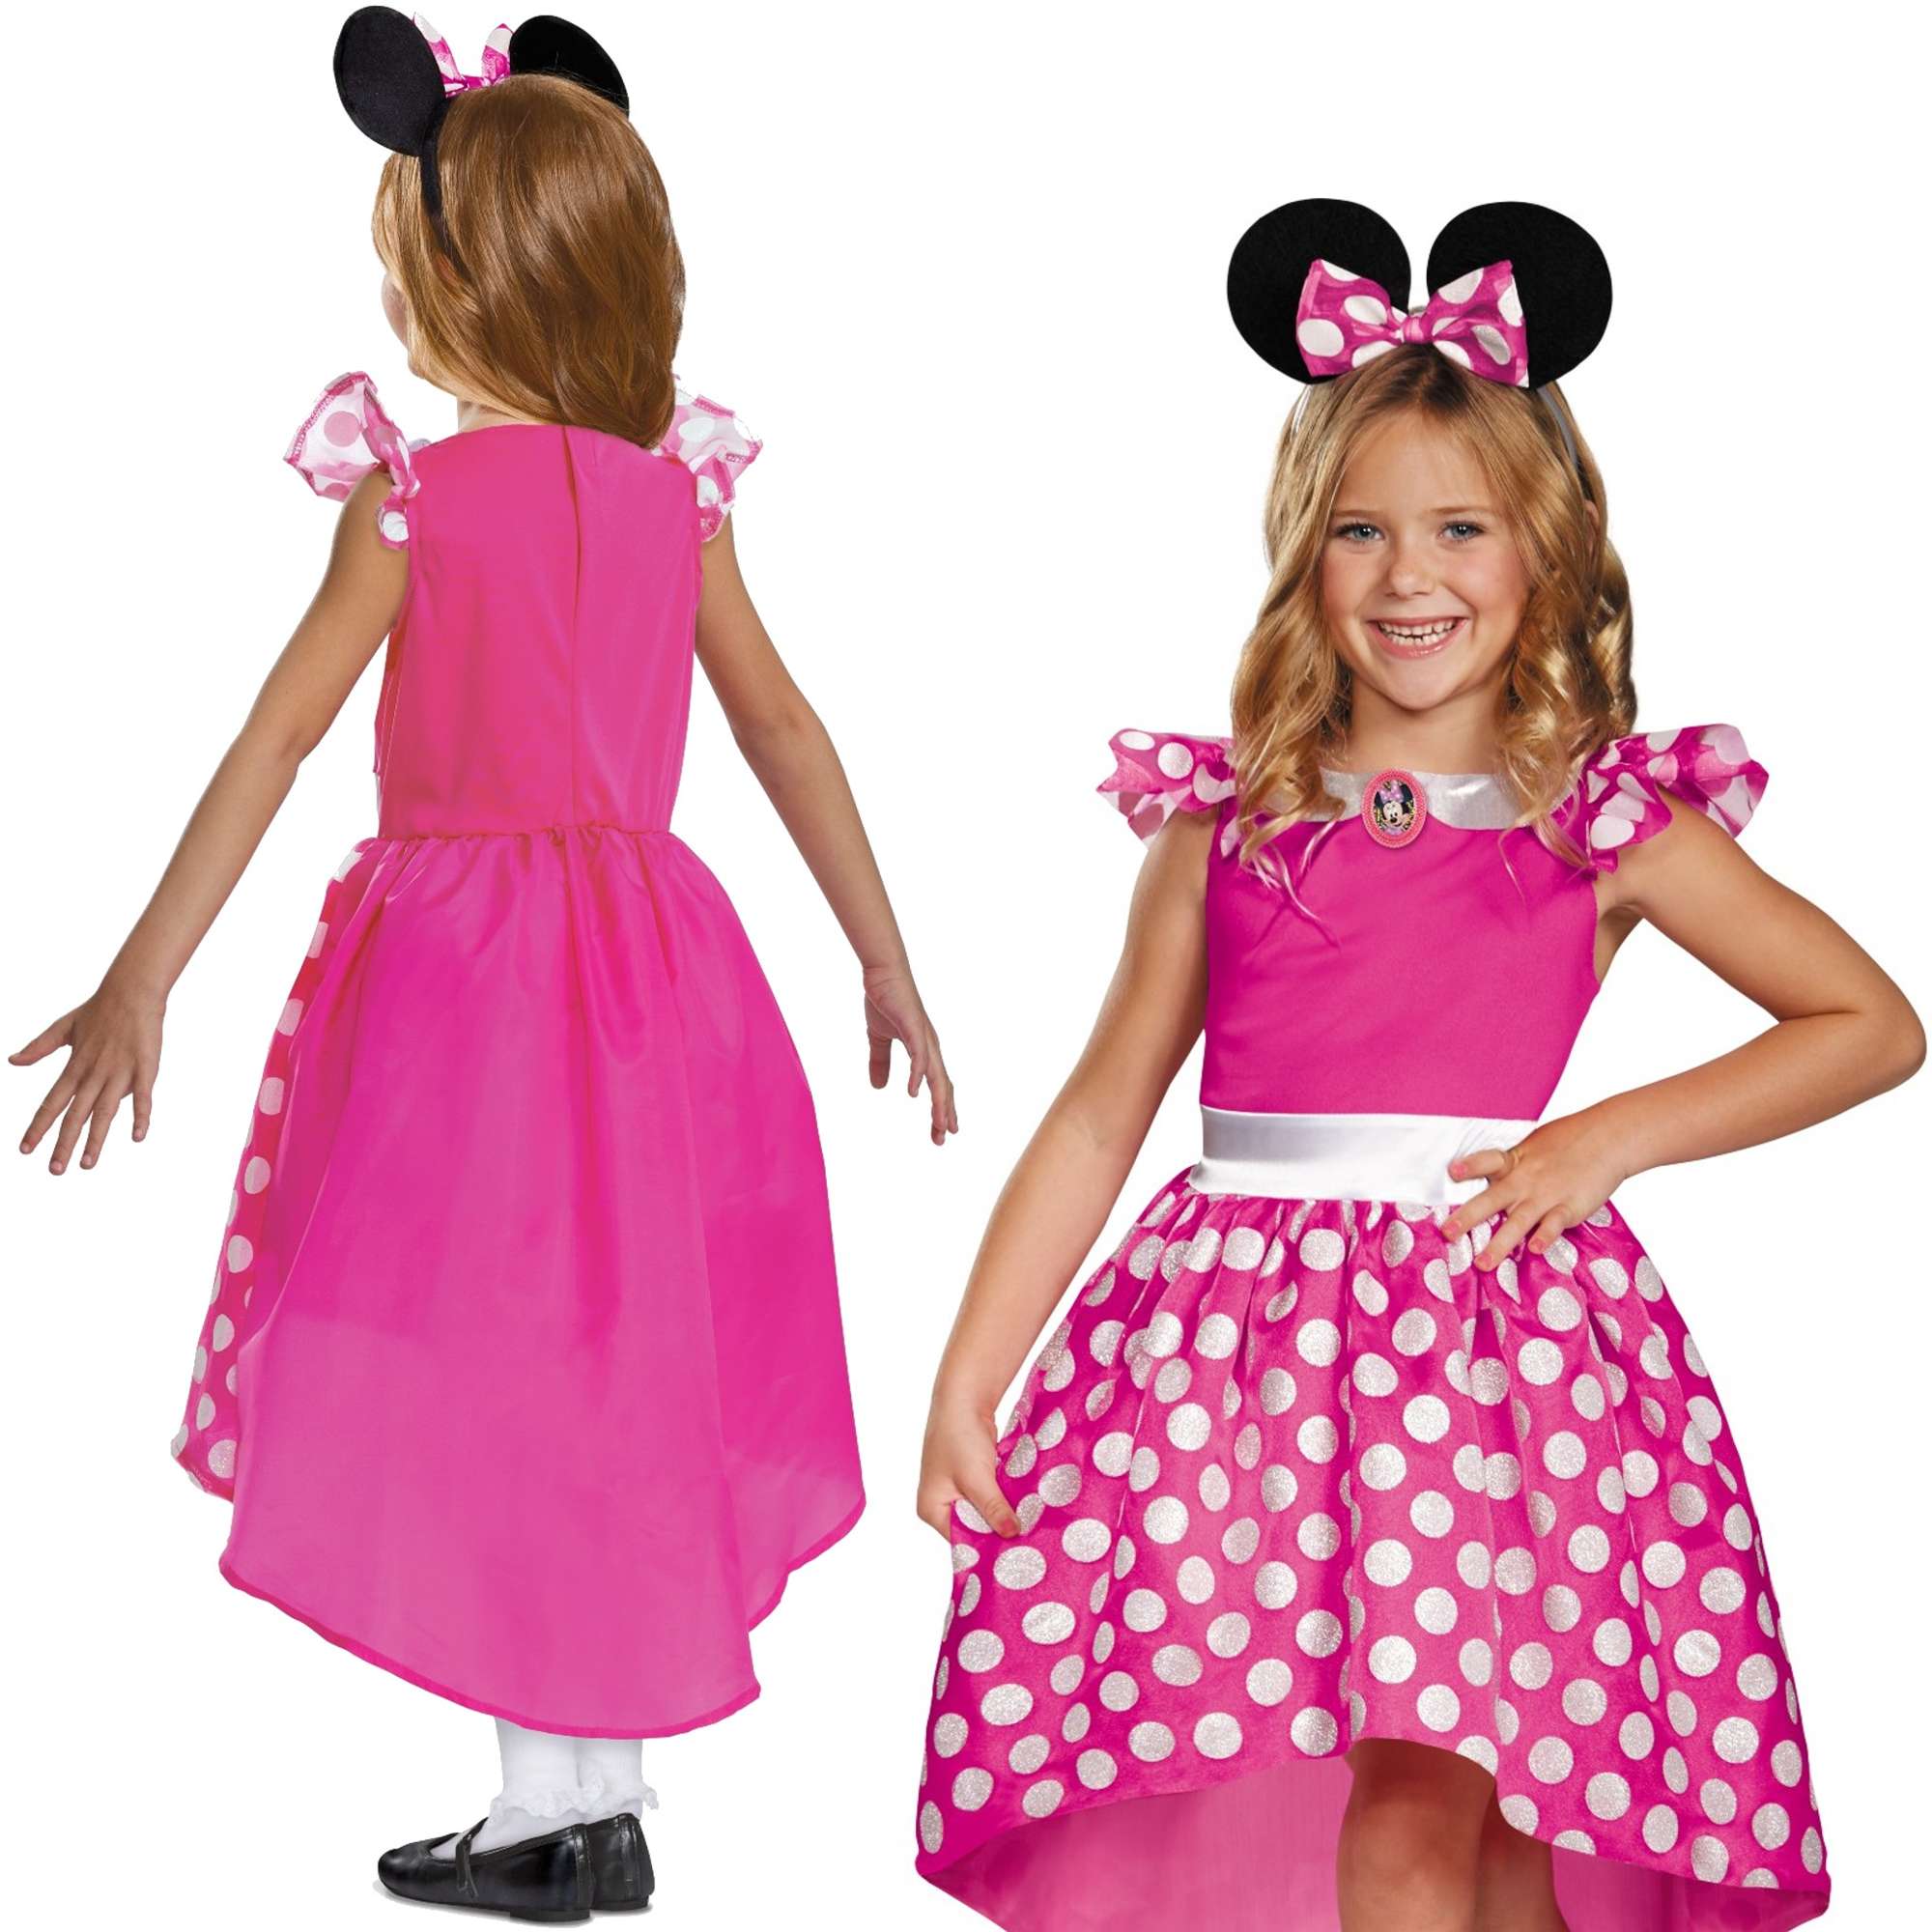 Strj karnawaowy Disney dla dziewczynki Myszka Minnie przebranie 98-110 cm (3-4 lata)